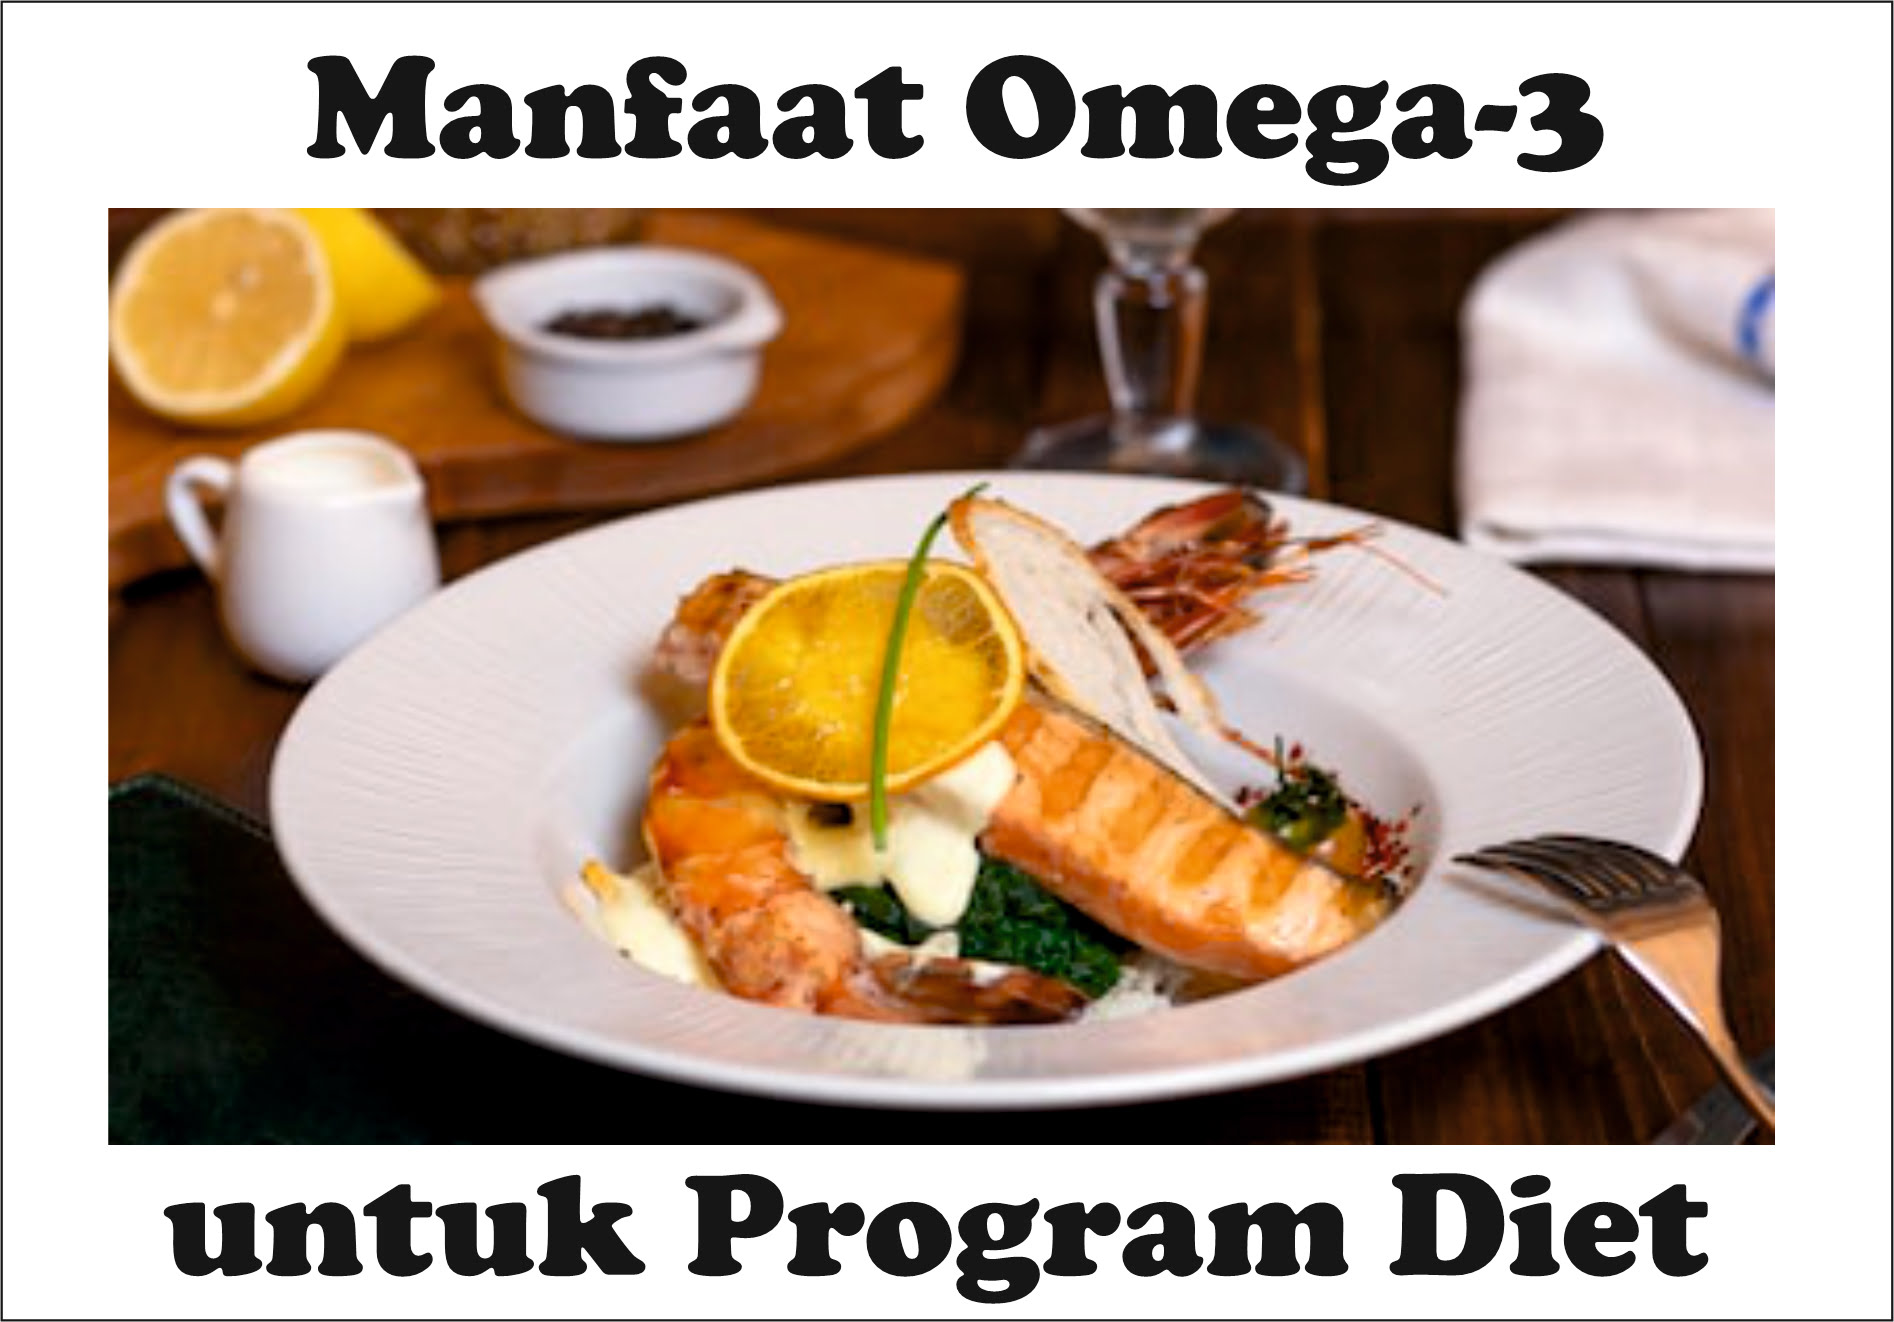 Manfaat Omega 3 untuk Program Diet